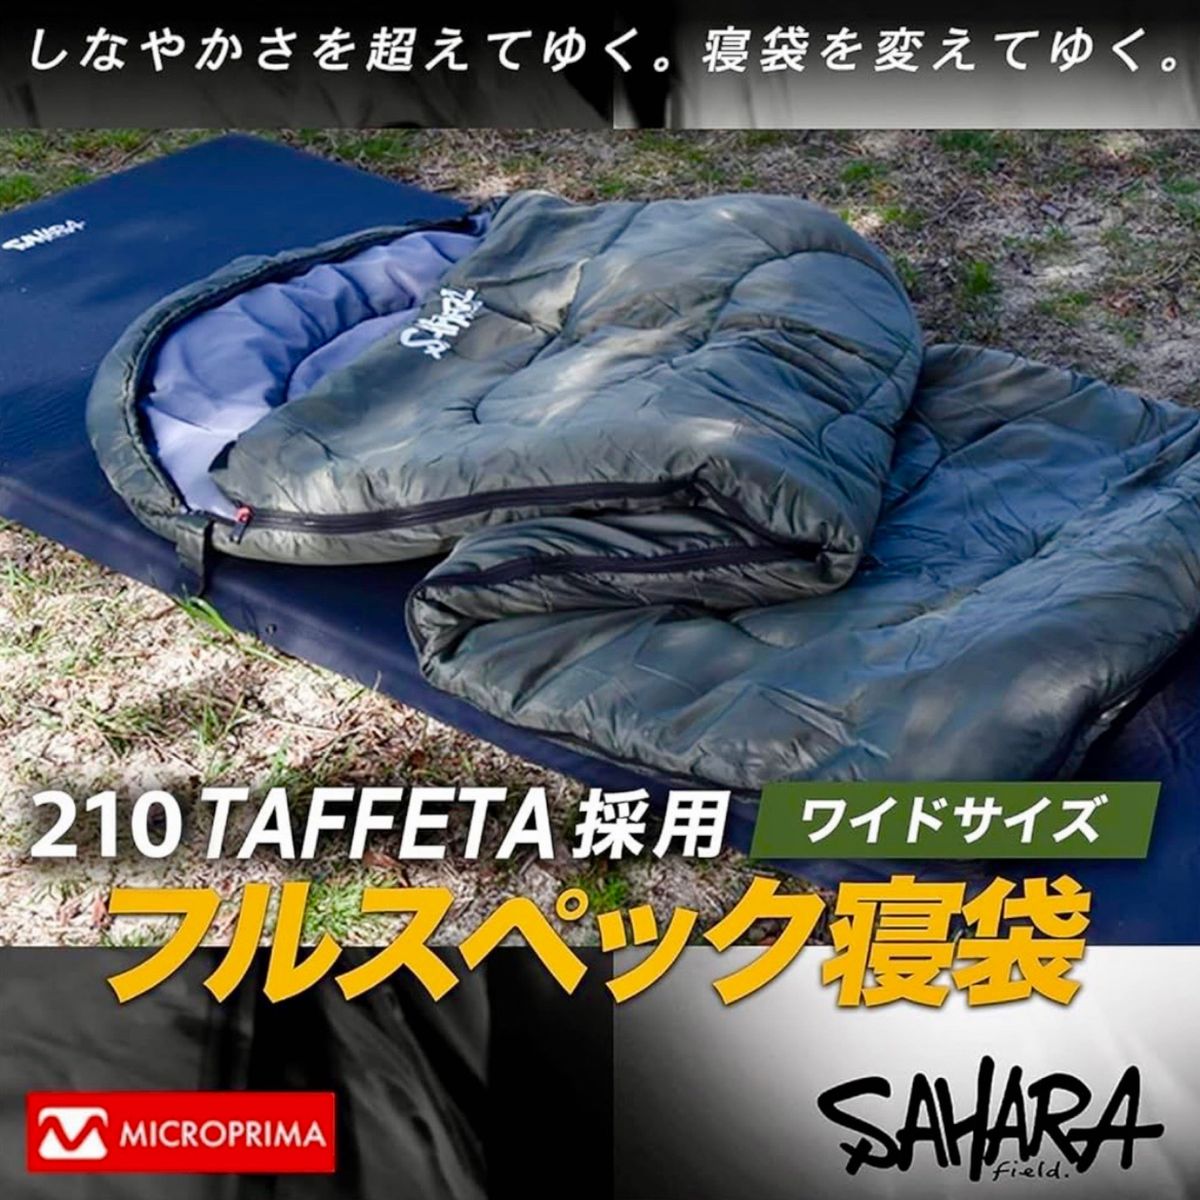 2個 高級素材 寝袋 シュラフ ワイドサイズ 枕付き 人工ダウン 冬用 -15℃対応 210T  洗える寝袋 真冬対応 カーキ